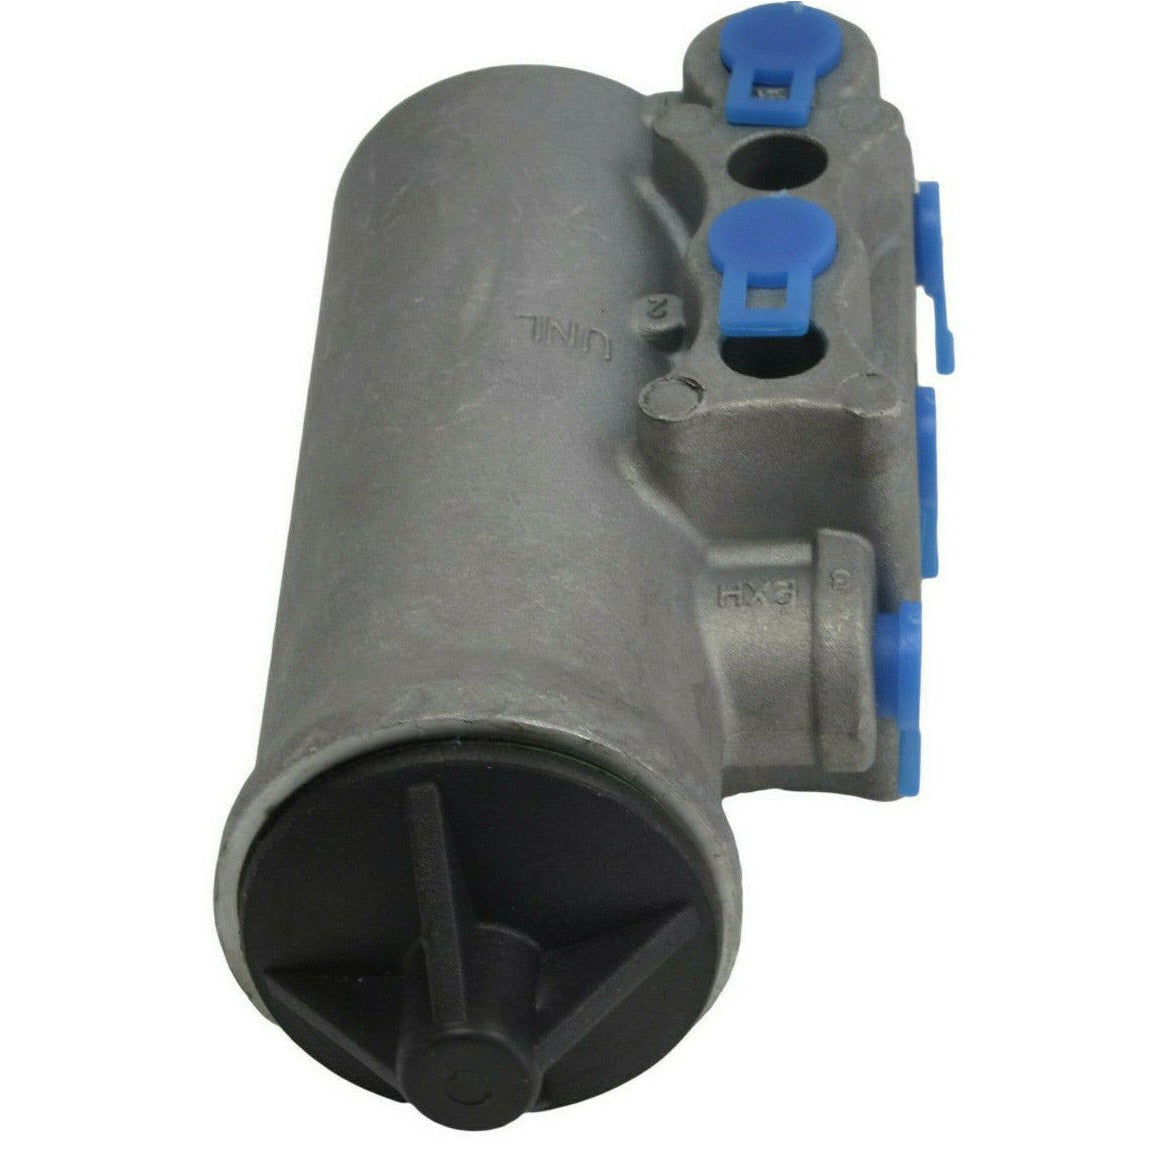 aftermarket D2 governor valve , air brake / system governor valve 105 - 125 PSI